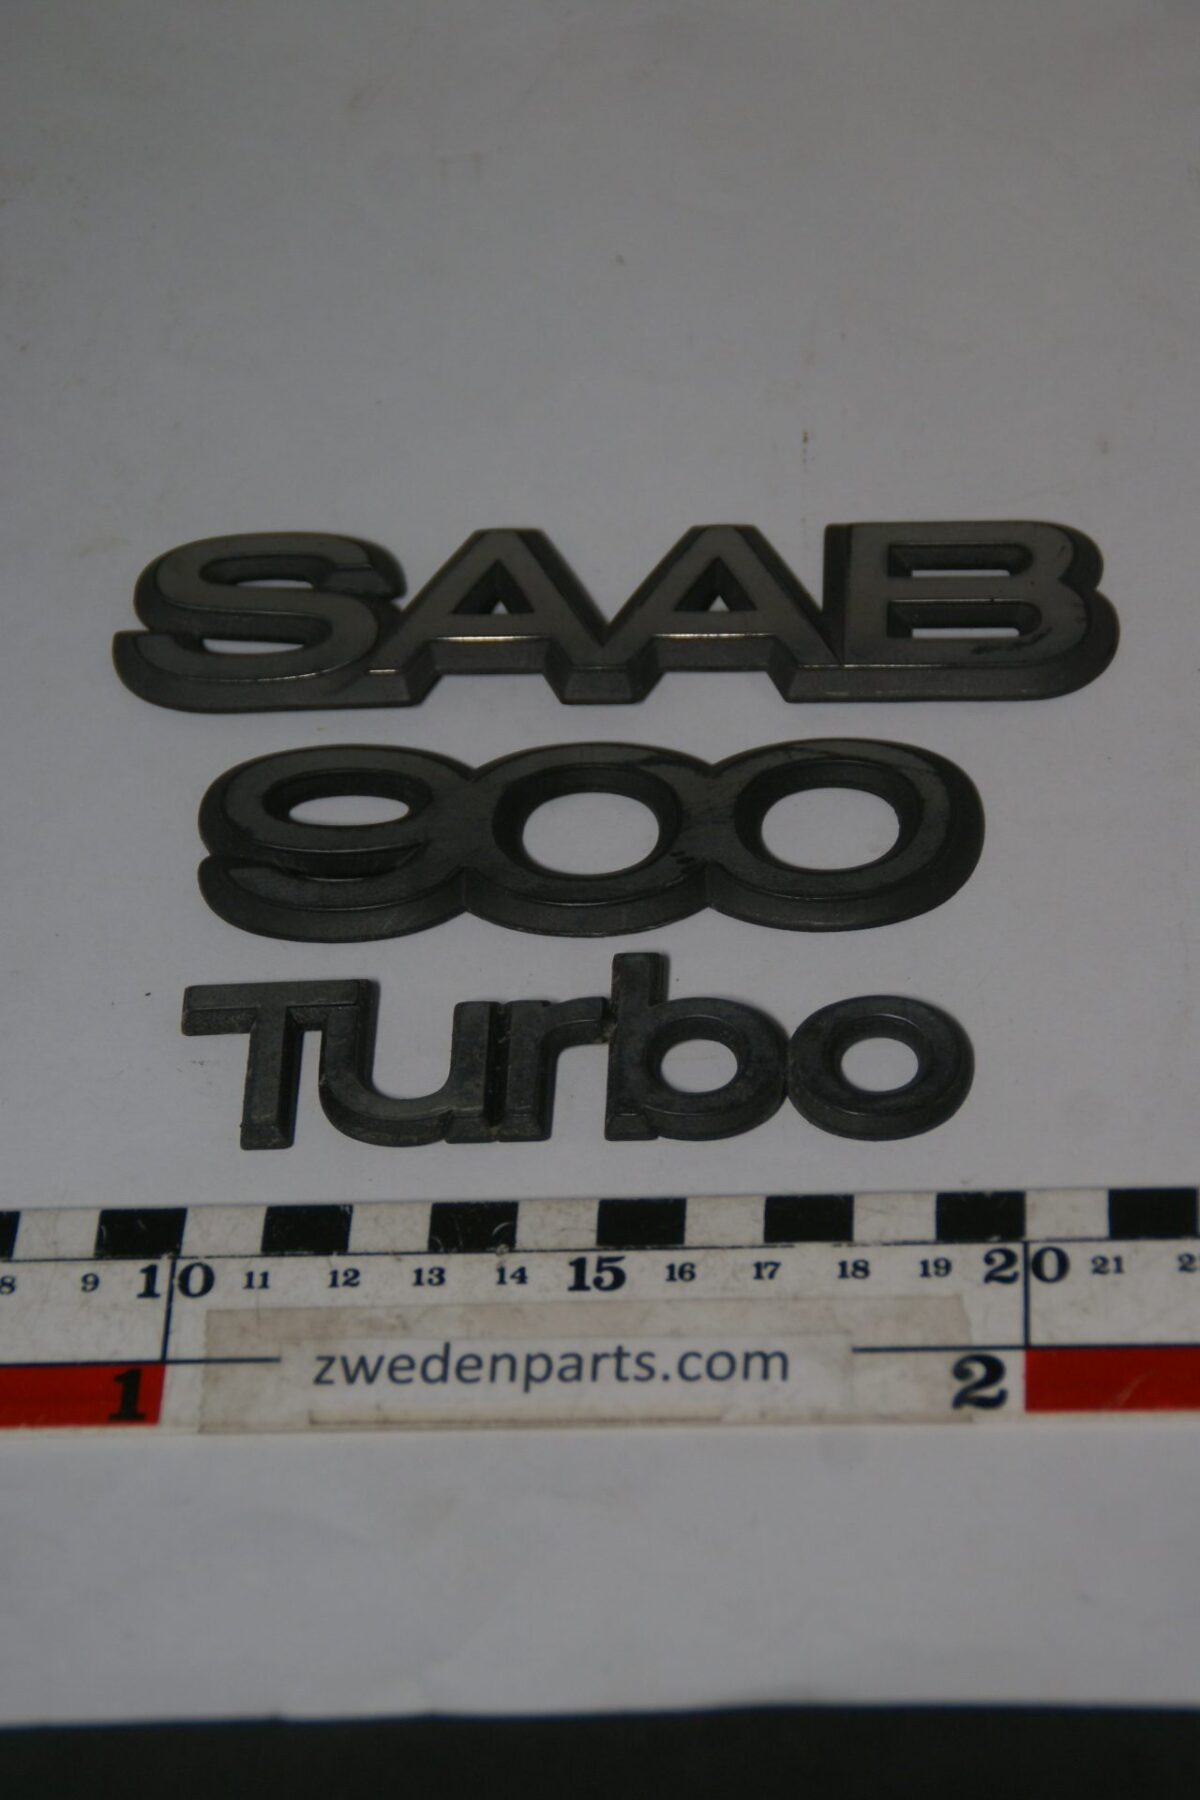 DSC04251 Saab 900 Turbo embleemset rotated